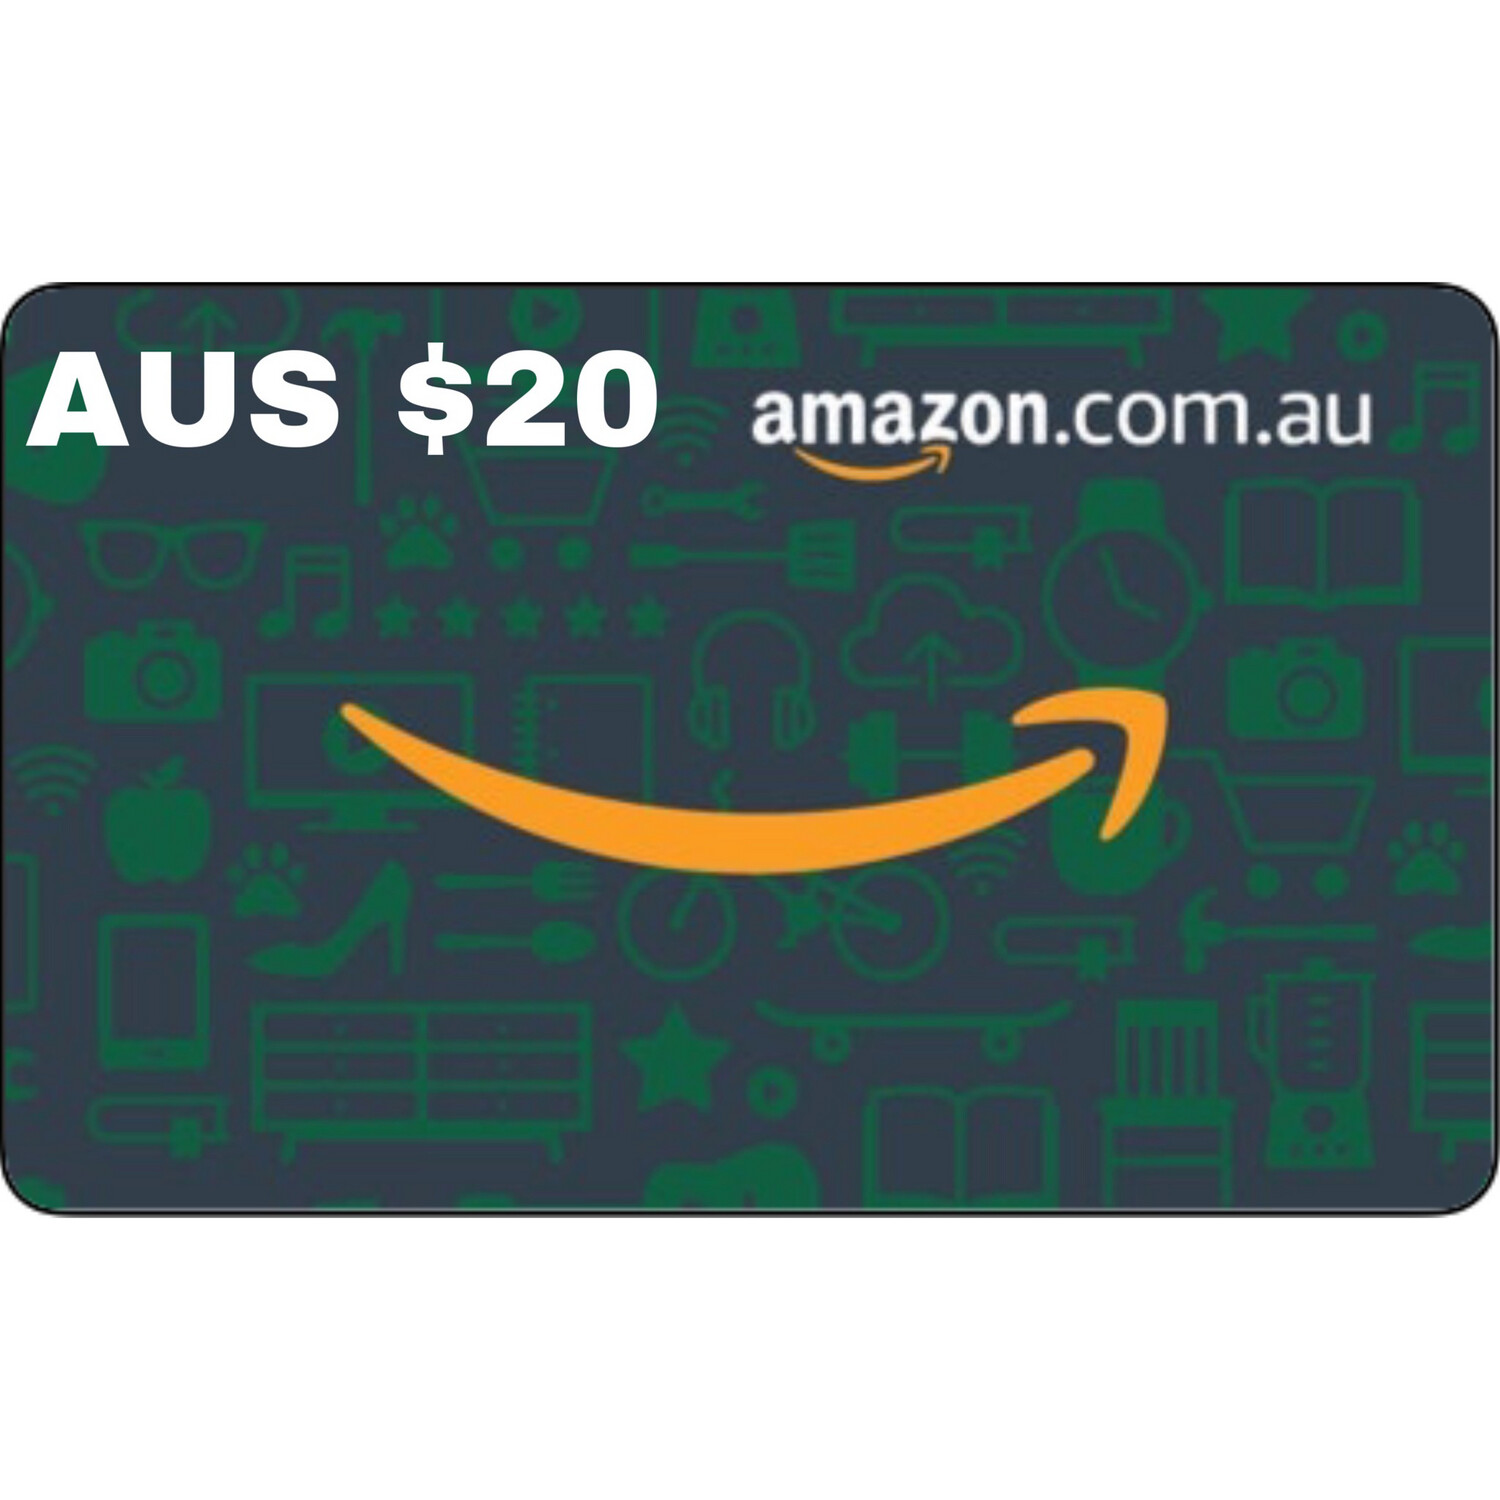 Amazon.com.au Gift Card Australia AUD $20